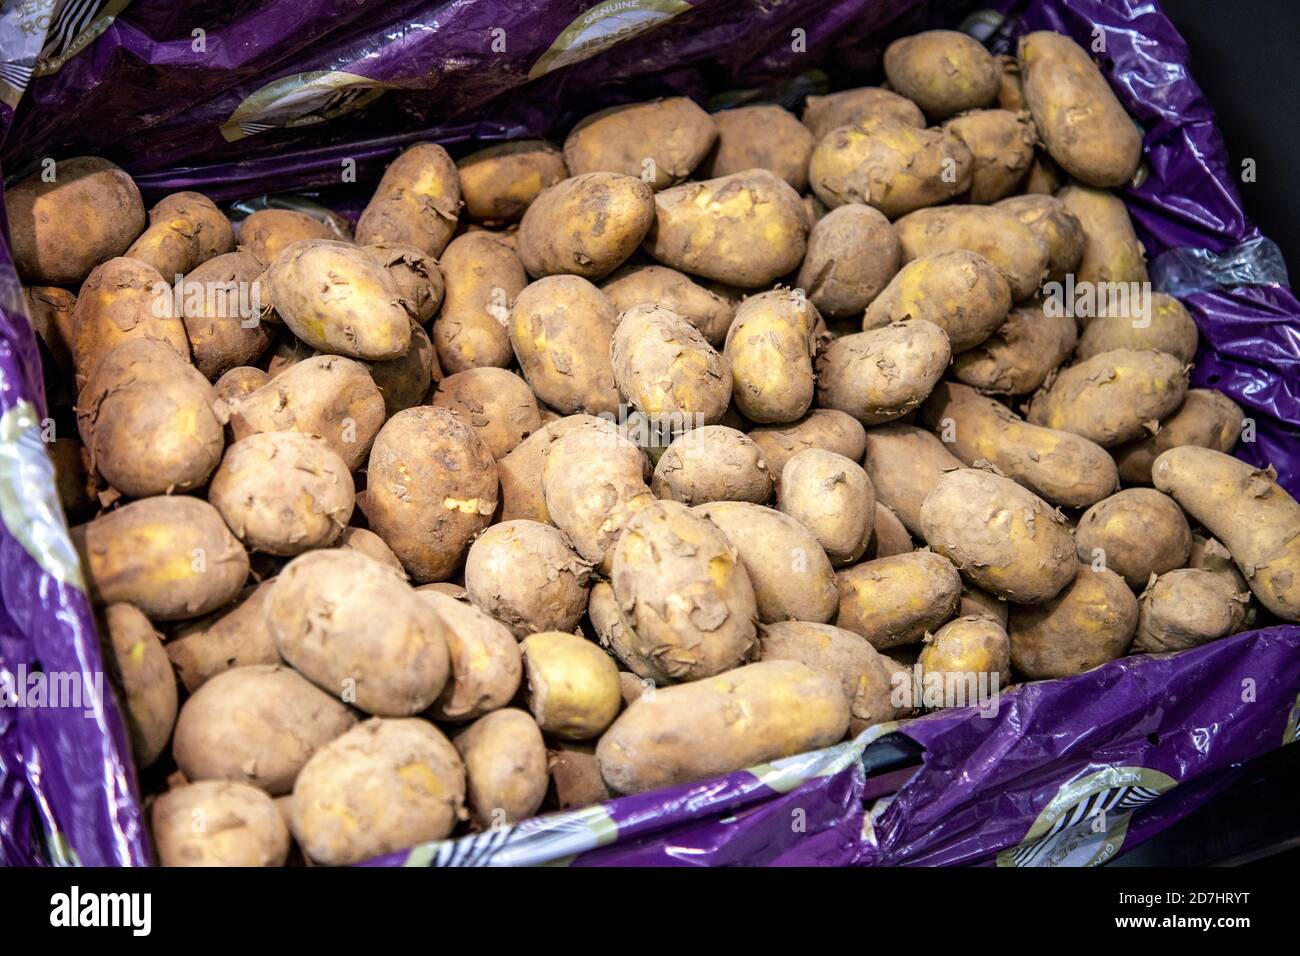 Jersey Royal Potatoes at a supermarket Stock Photo